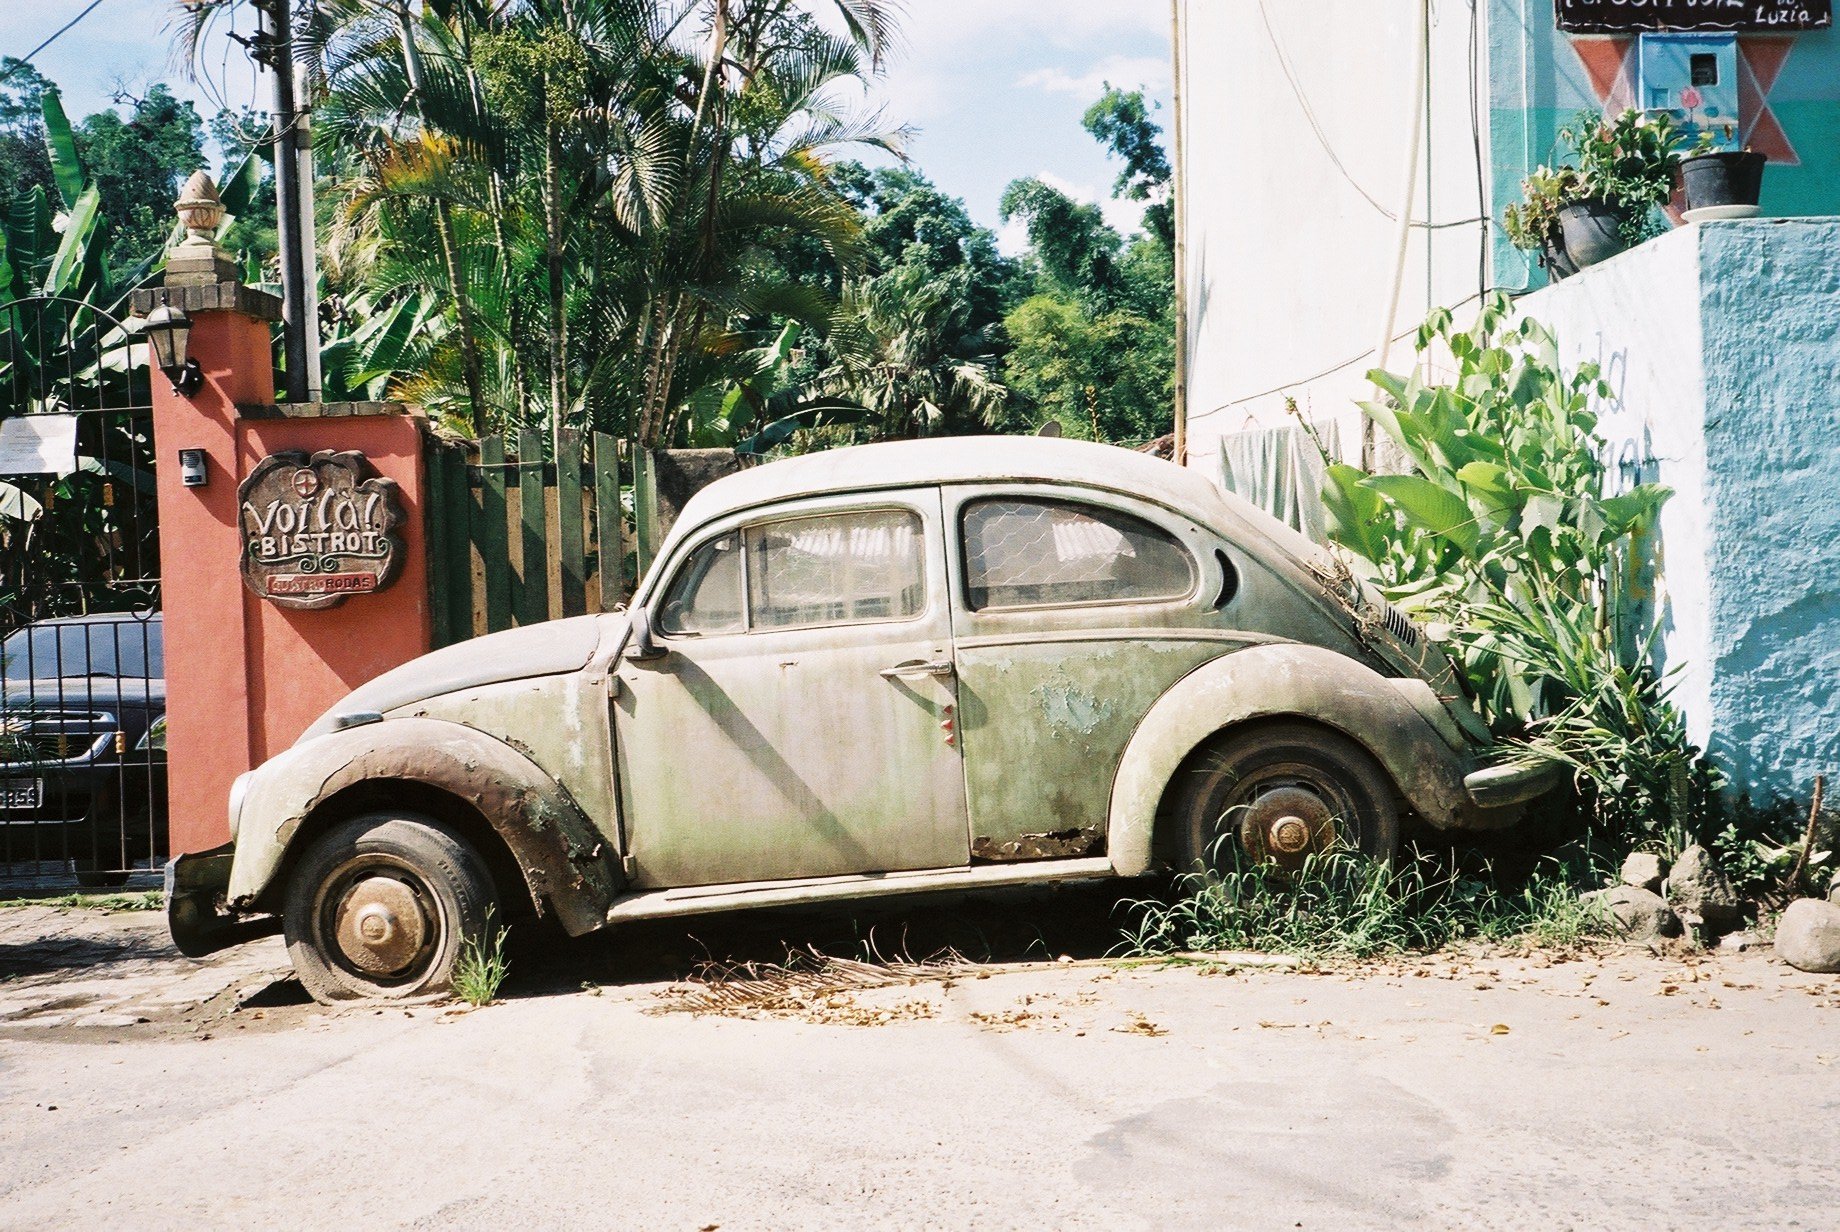  Rusty Beetle in Rio de Janeiro - Brazil 